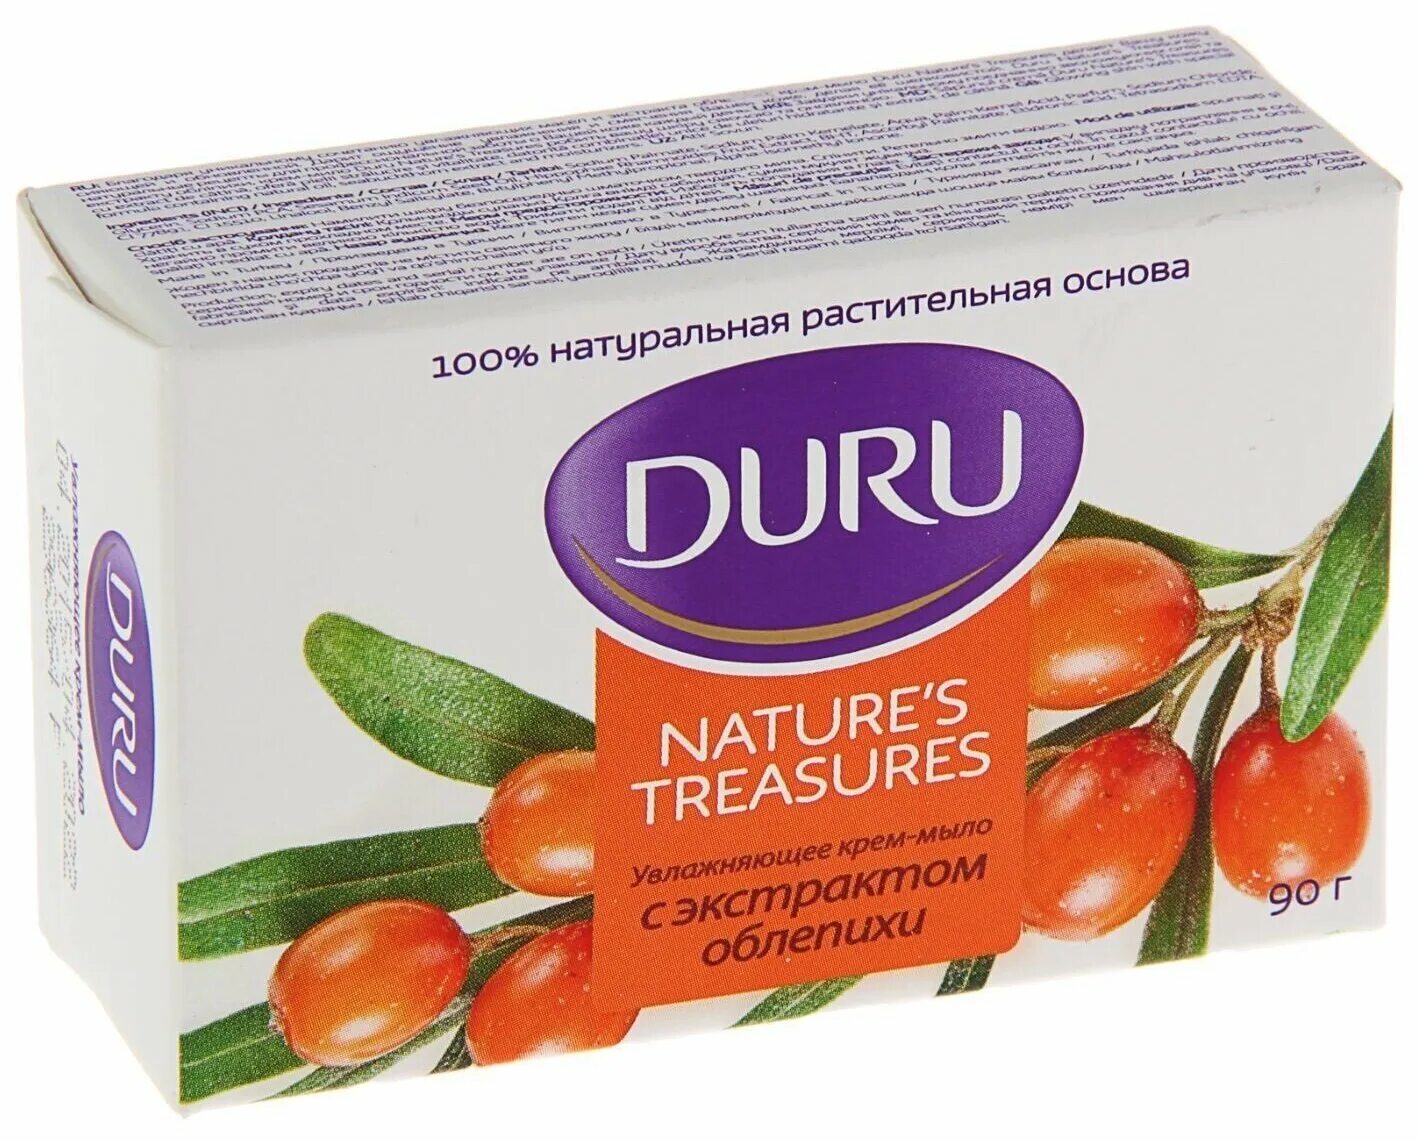 Nature treasures. Мыло Duru. Duru с облепихой мыло. Крем-гель для душа Duru nature's Treasures с экстрактом облепихи. Duru мыло и жидкое мыло.